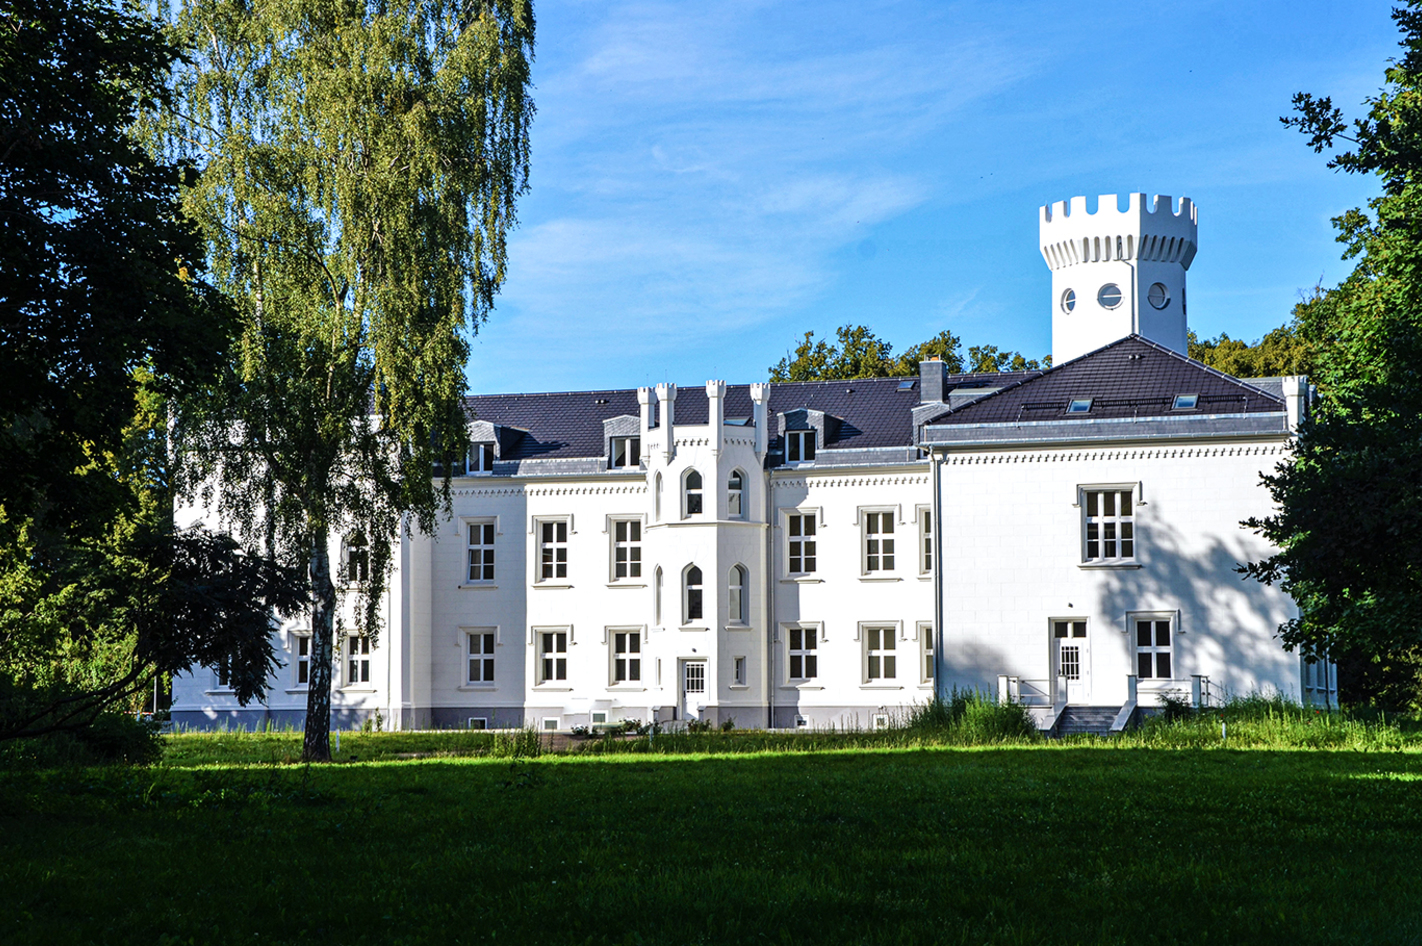 3 Tage Schlosshotel in Groß Mohrdorf für 2 (2 Nächte) inkl. Halbpension